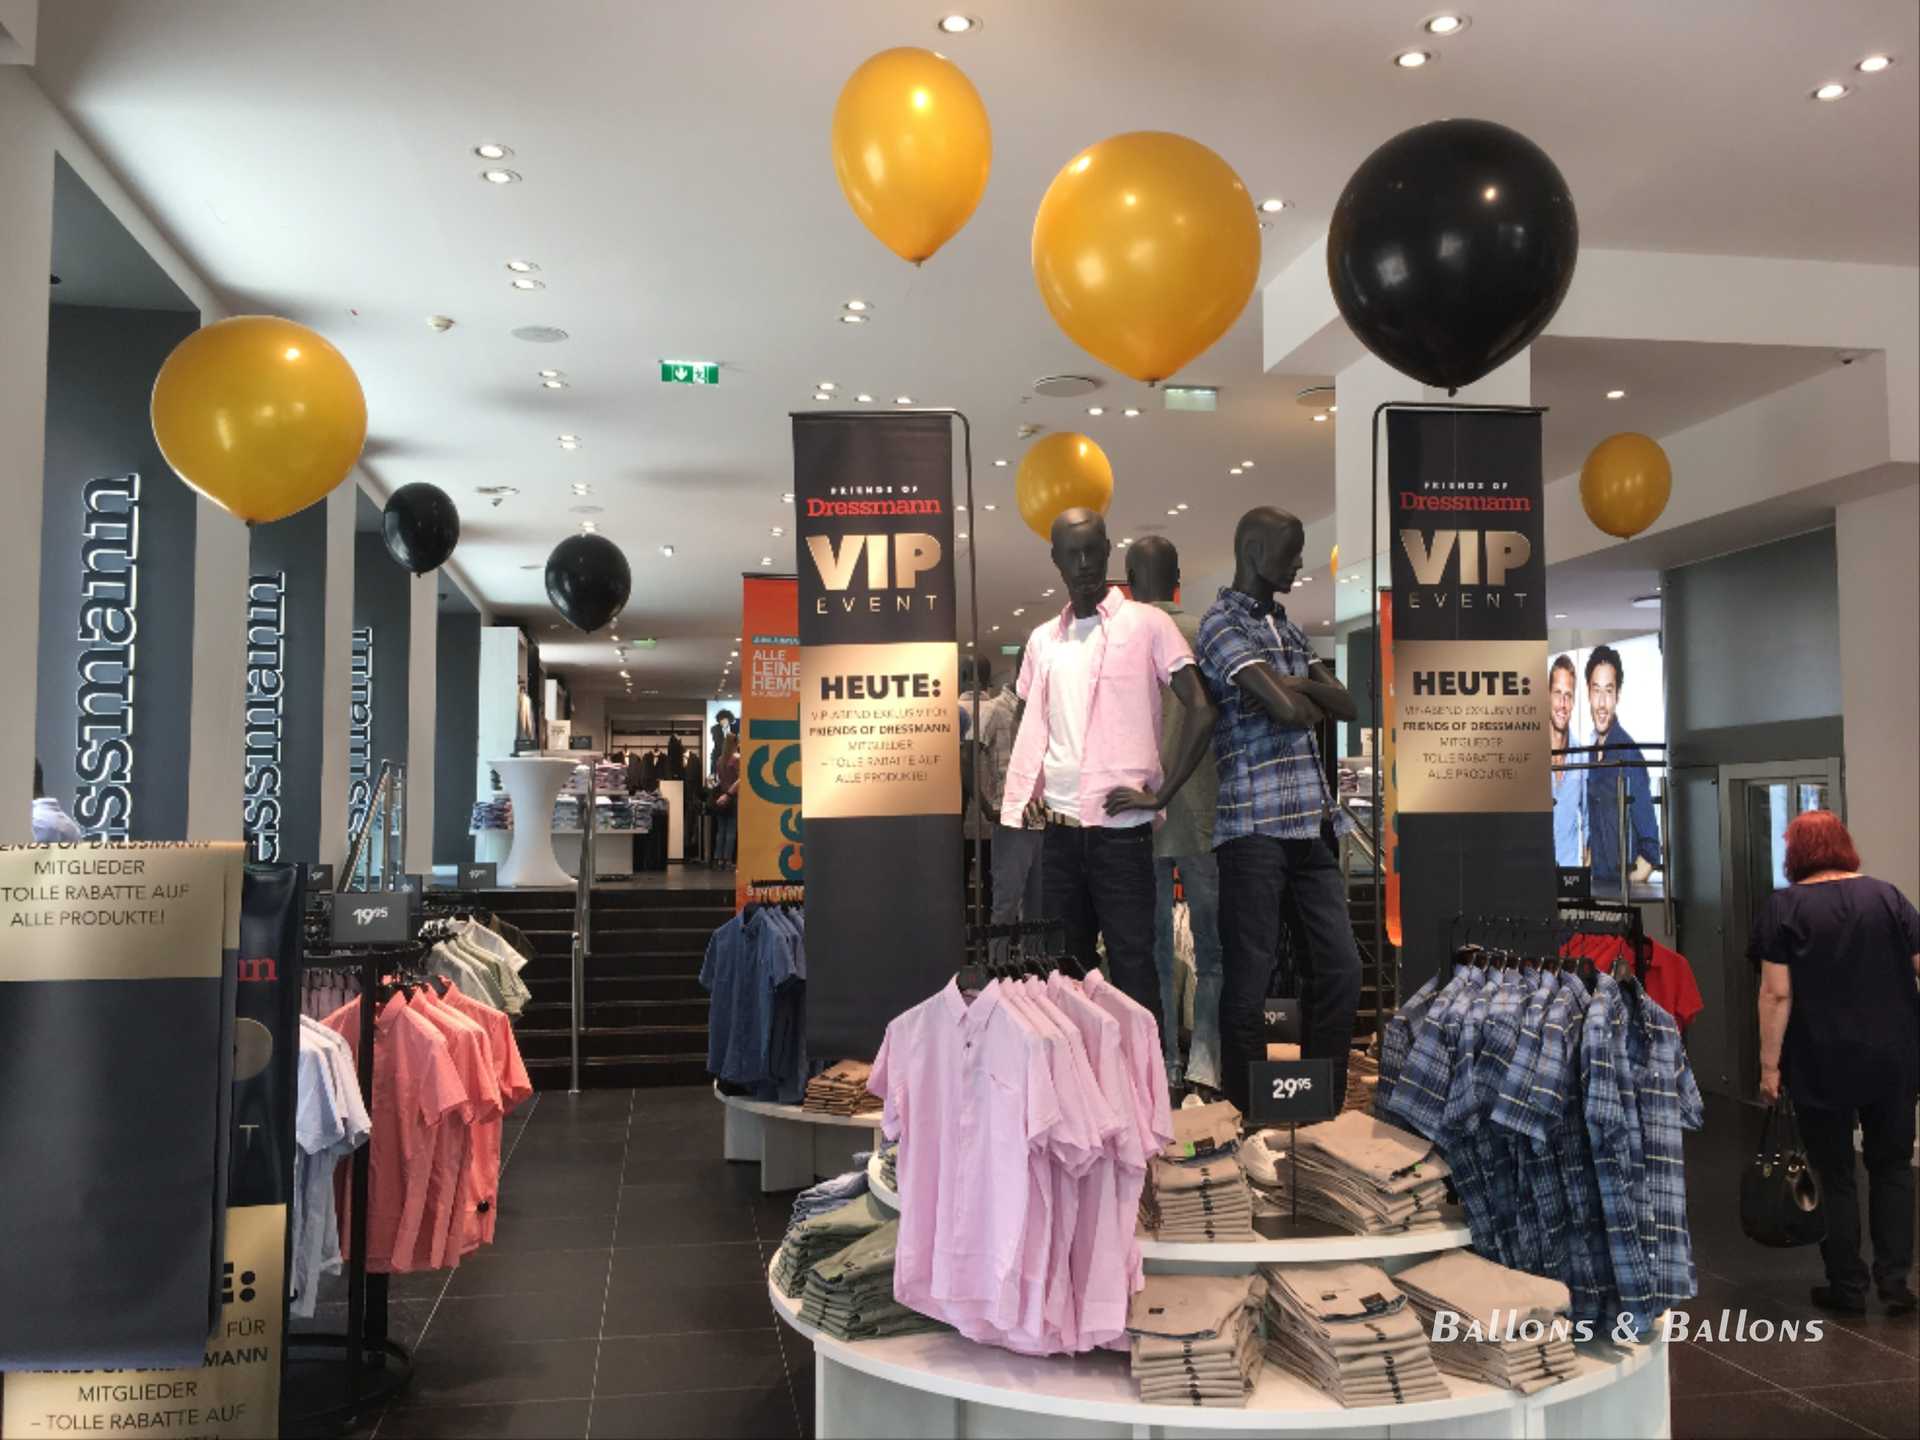 Ein Geschäft mit gelben und schwarzen Ballonen in Wien.